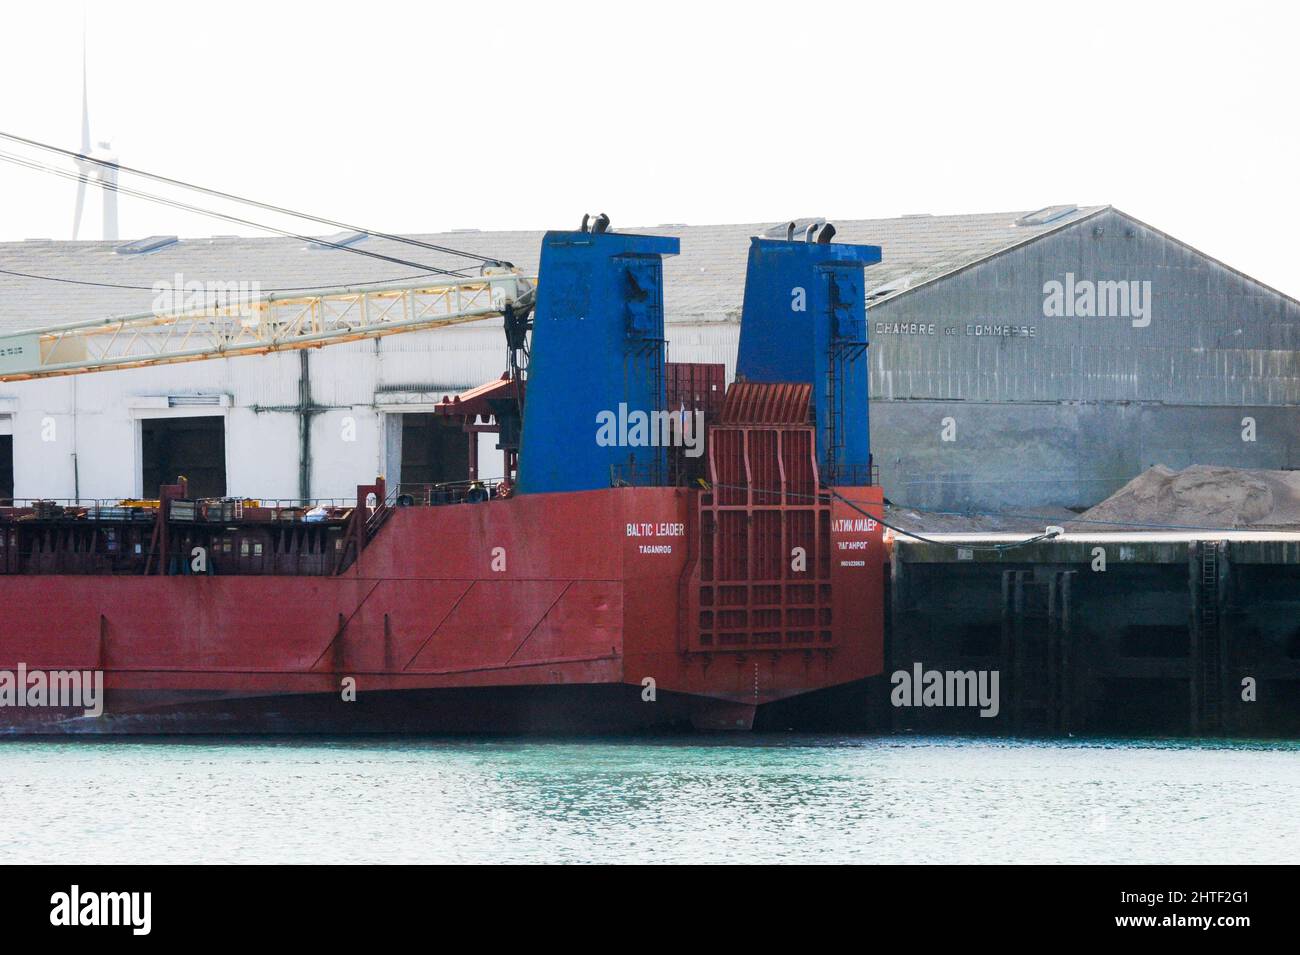 Le cargo russe Baltic leader, détenu dans la Manche, est amarré dans le  port de Boulogne-sur-Mer, France, le 26 février 2022. La France a  intercepté et a percuté un cargo battant pavillon